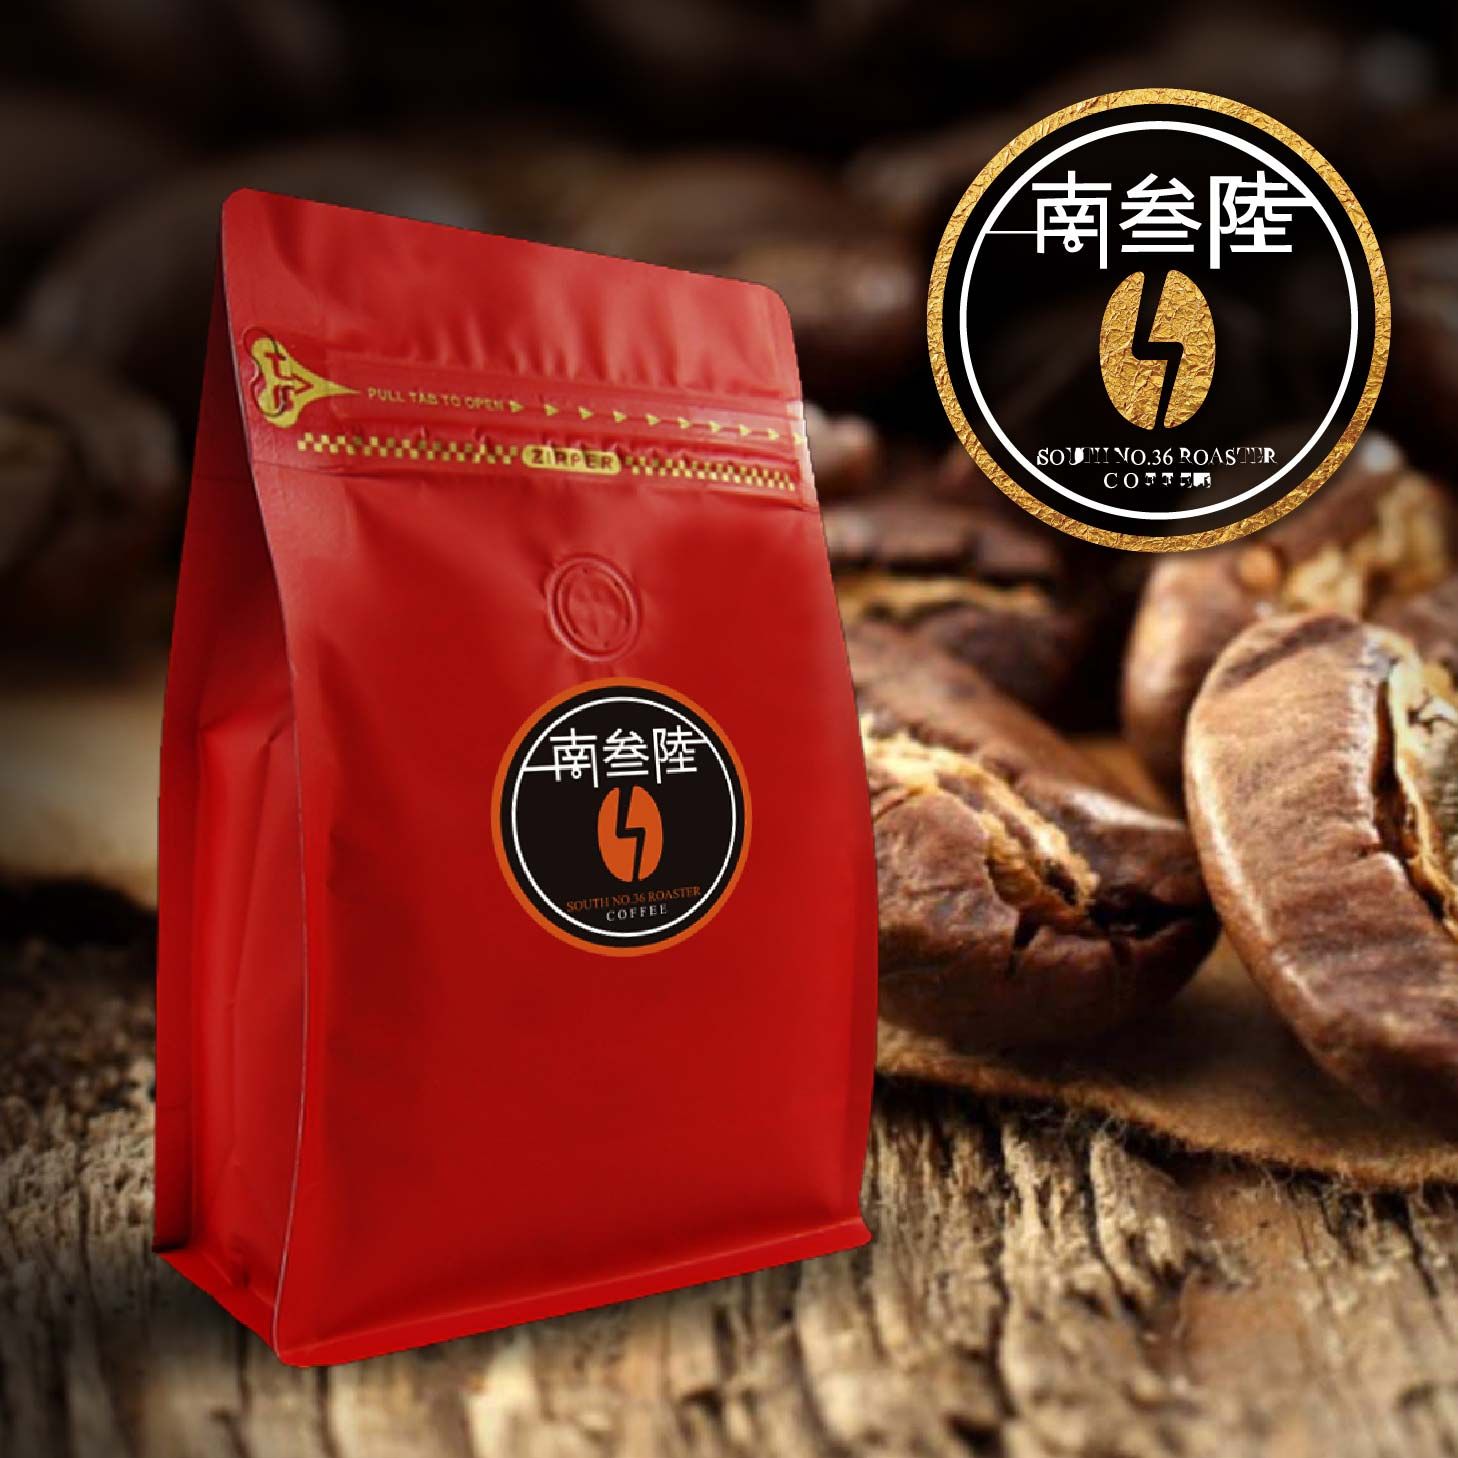 21.南叄陸36味綜合Blend店內義式咖啡用豆